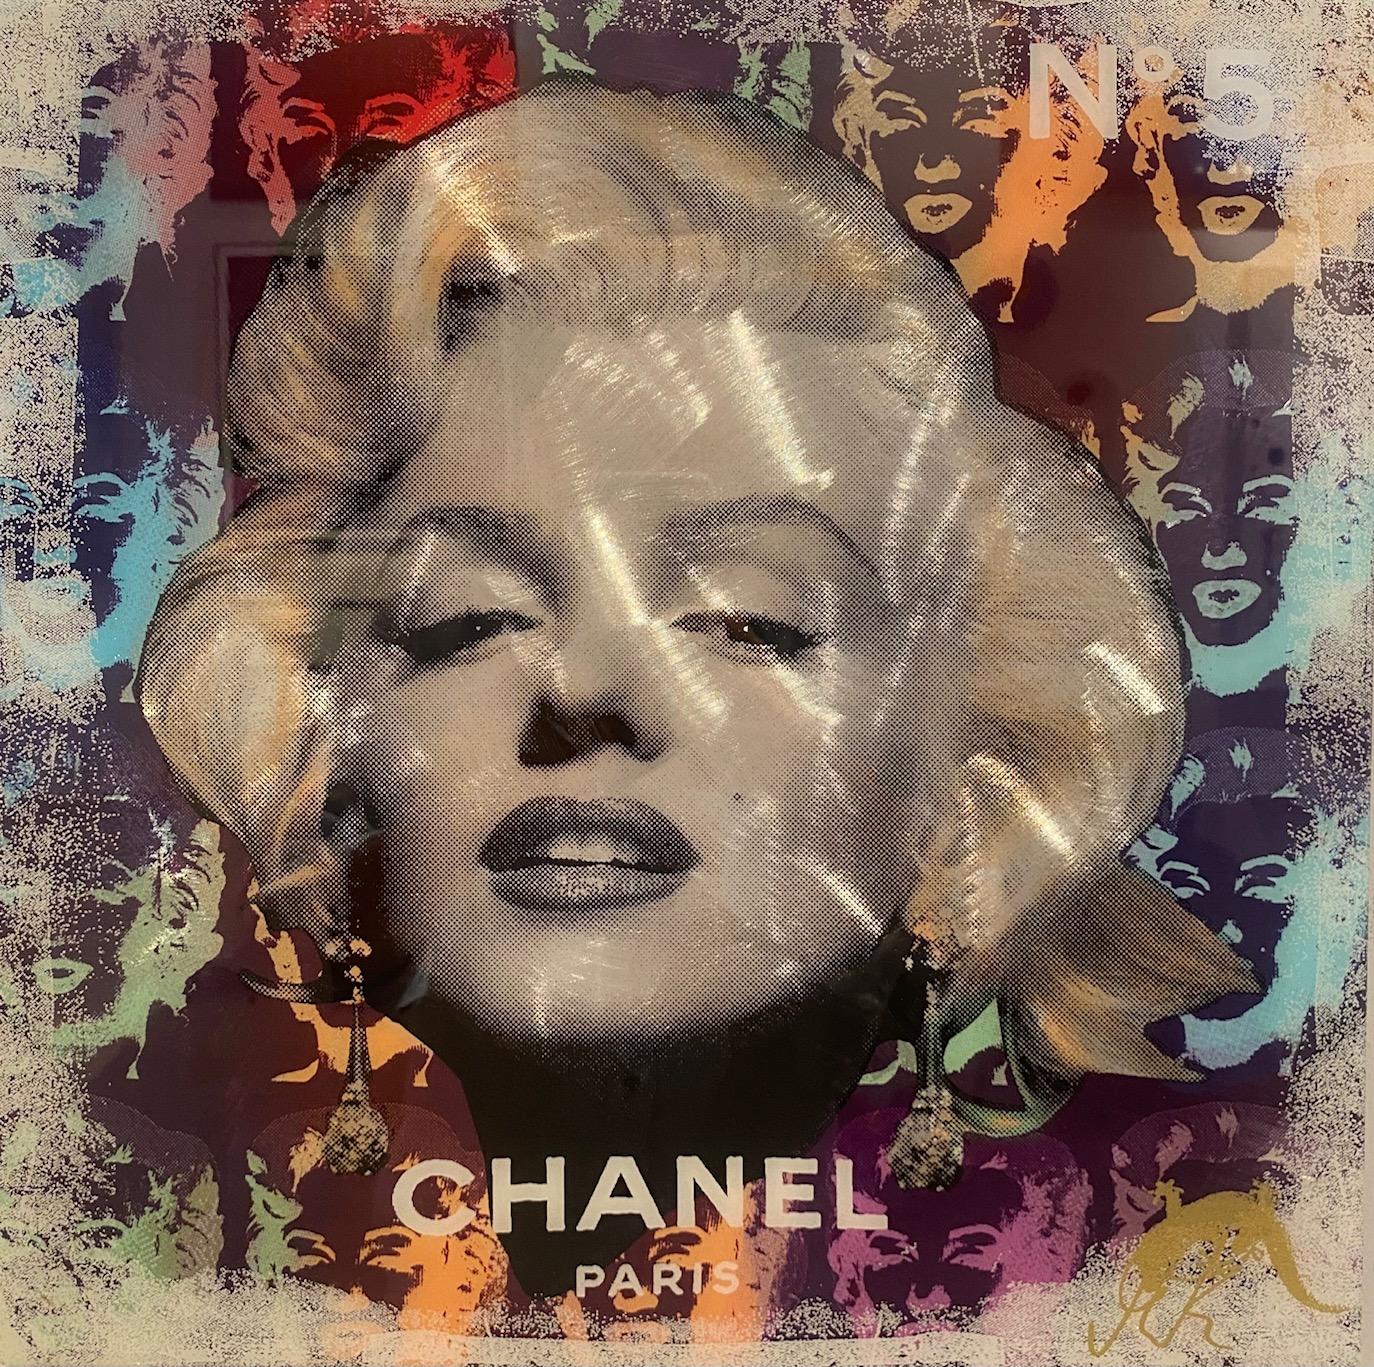 Chanel No. 5 - zeitgenössisches Originalporträt einer Pop-Art-Ikone von Marilyn Monroe